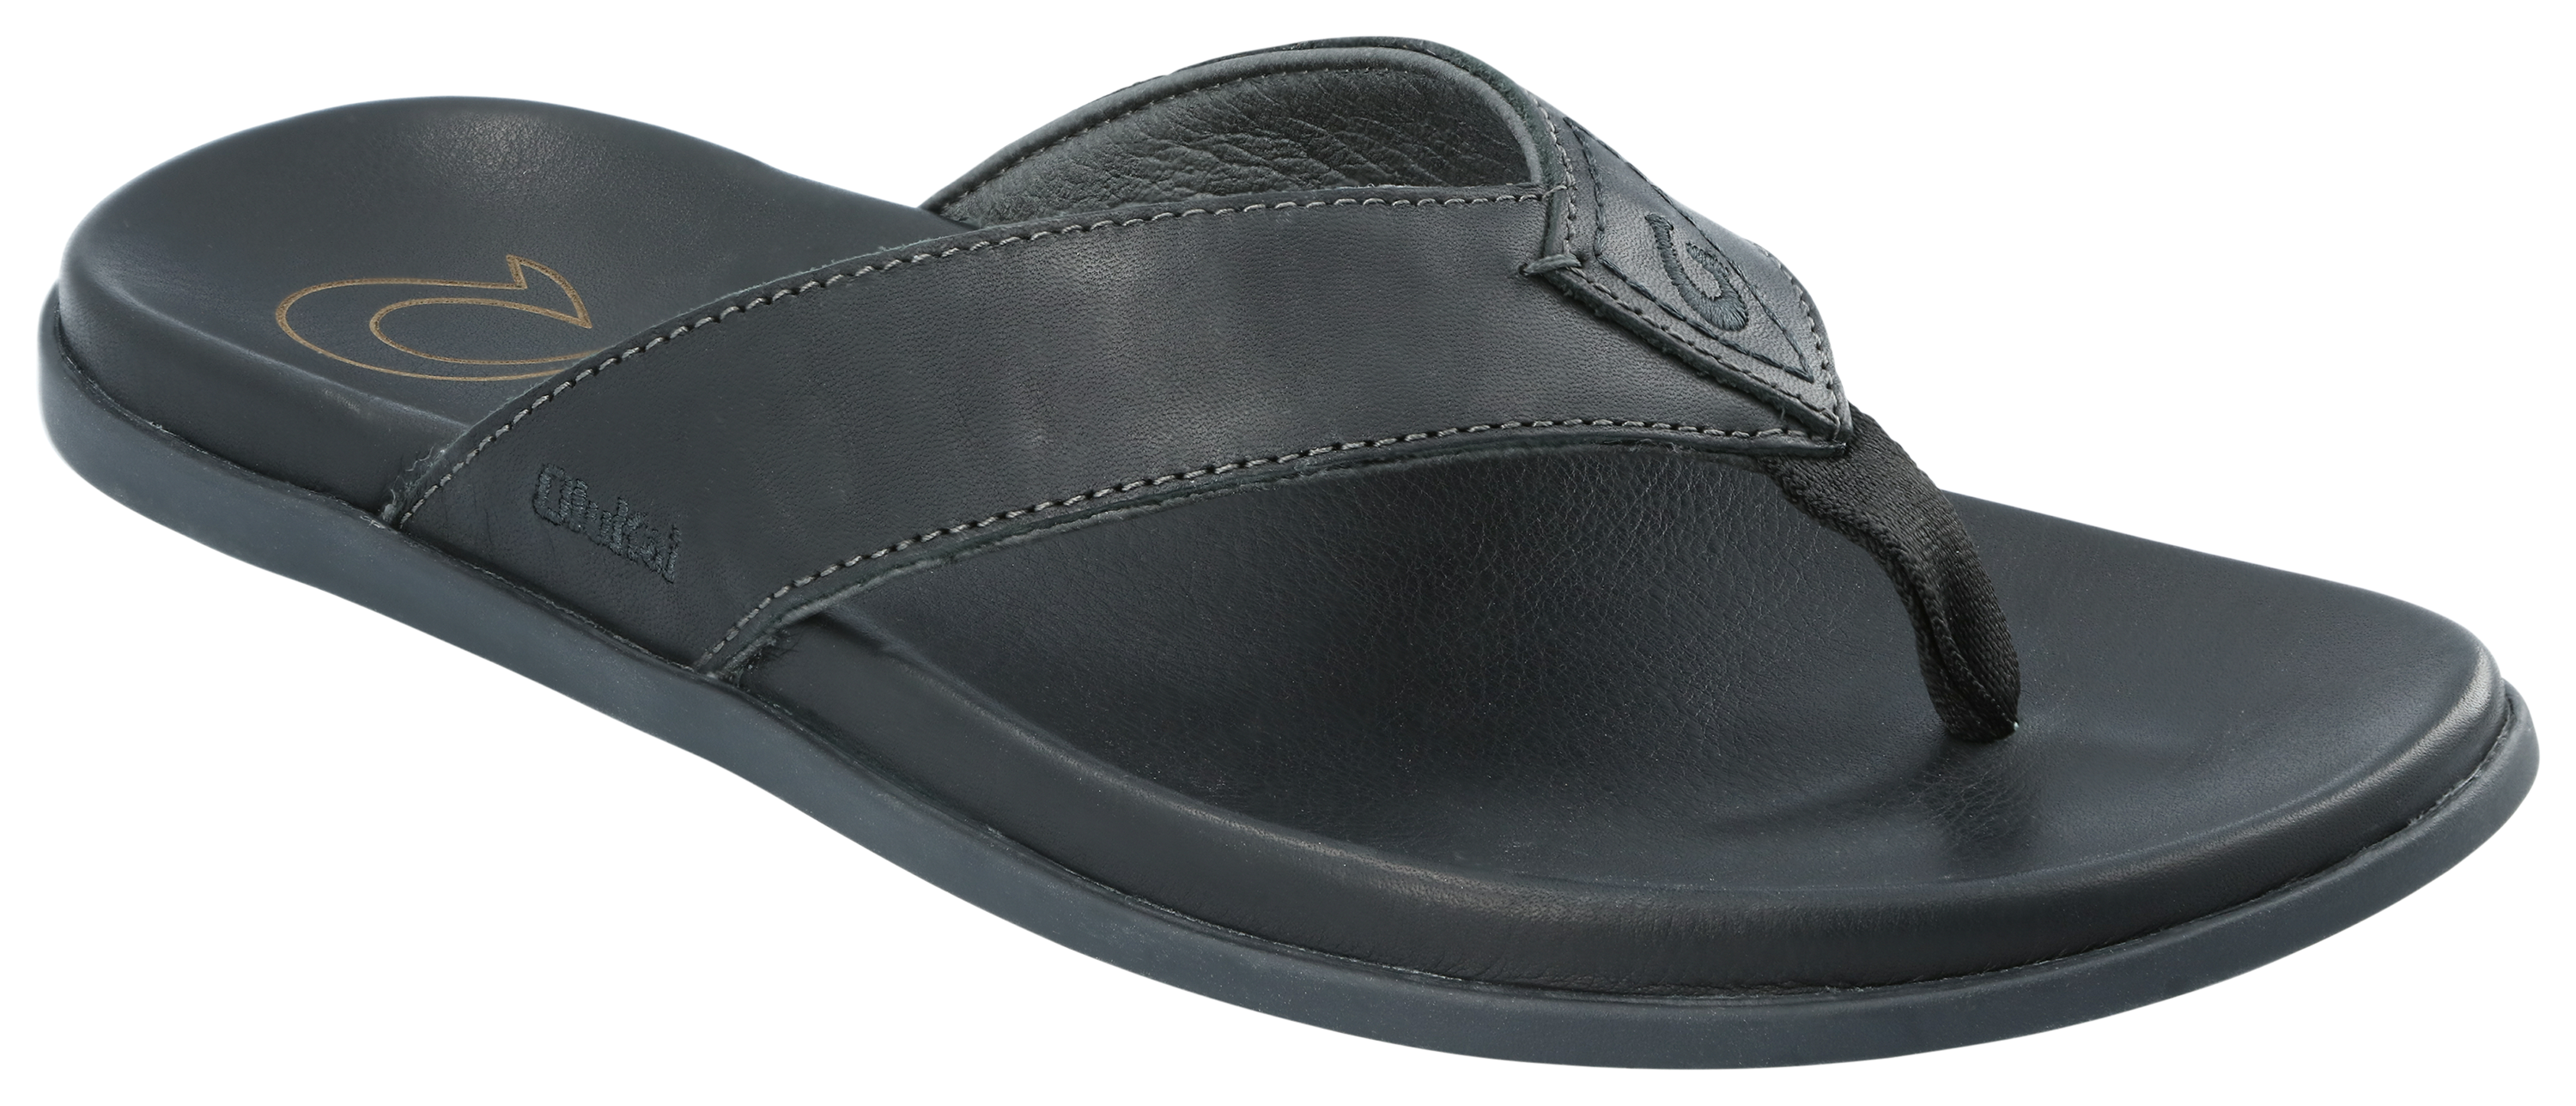 OluKai Nalukai Leather Beach Sandals for Men | Bass Pro Shops